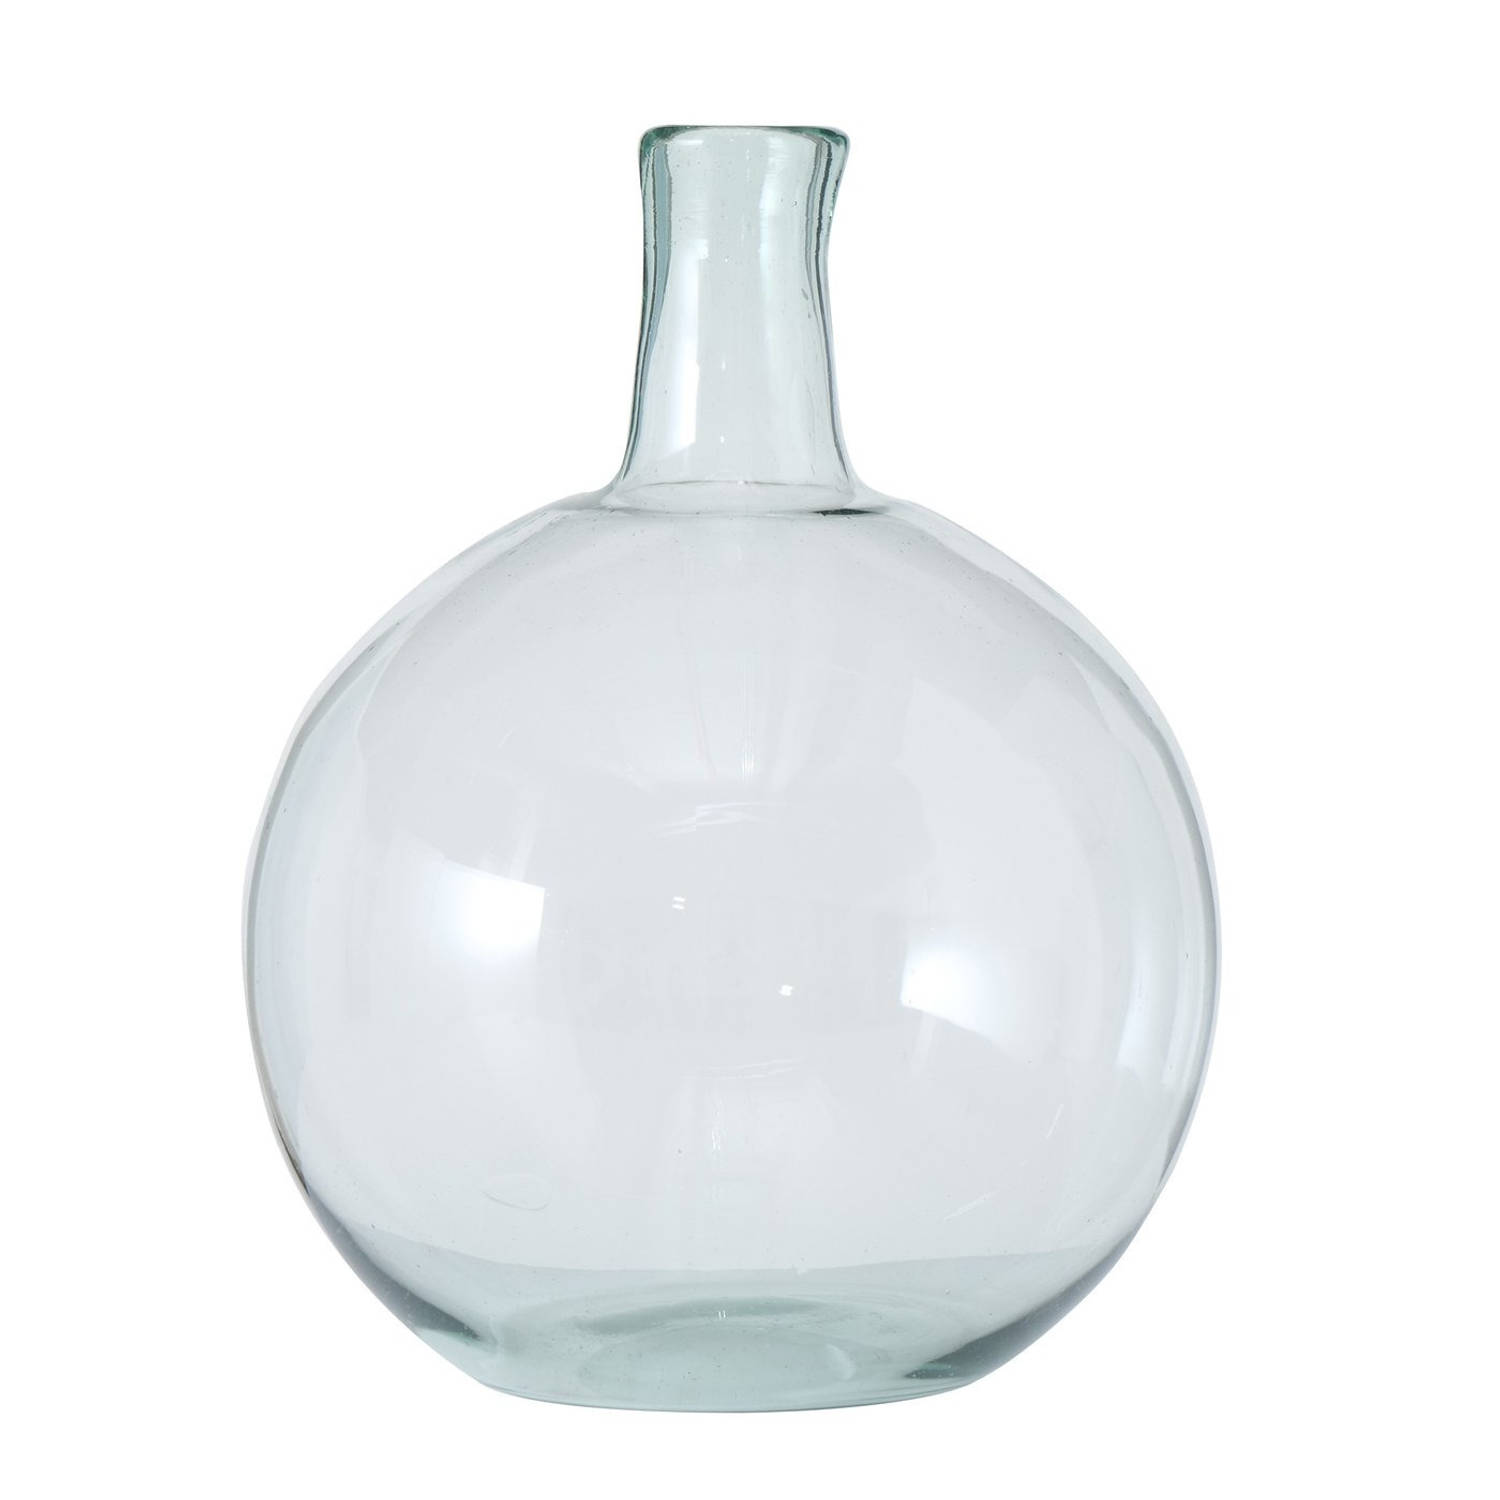 Stijlvolle Glazen Decoratieve Bloemenvaas In Het Transparant Glas Van 24 X 18 Cm Vazen